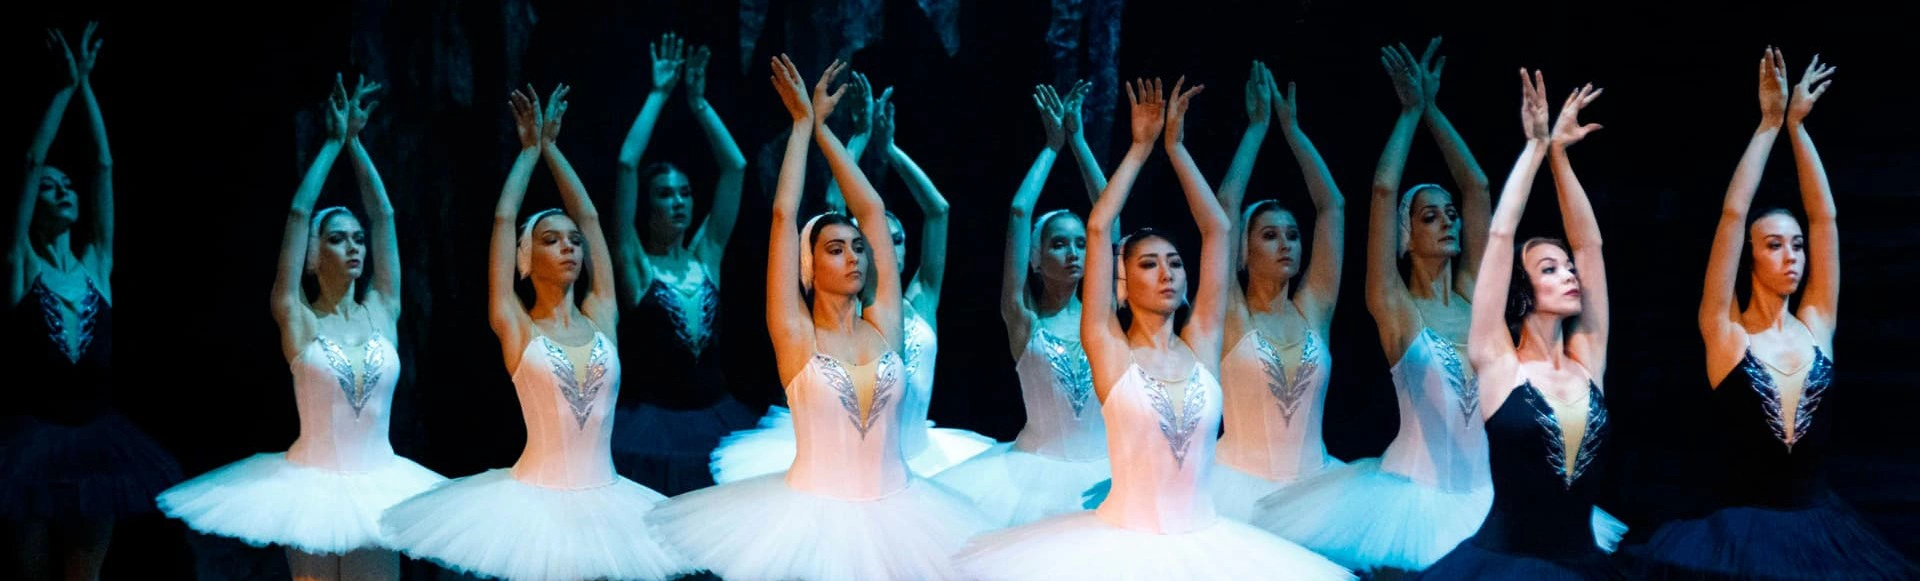 В Сочи состоится невероятное событие для всех любителей балета — выступление знаменитого Театра балета Юрия Григоровича.